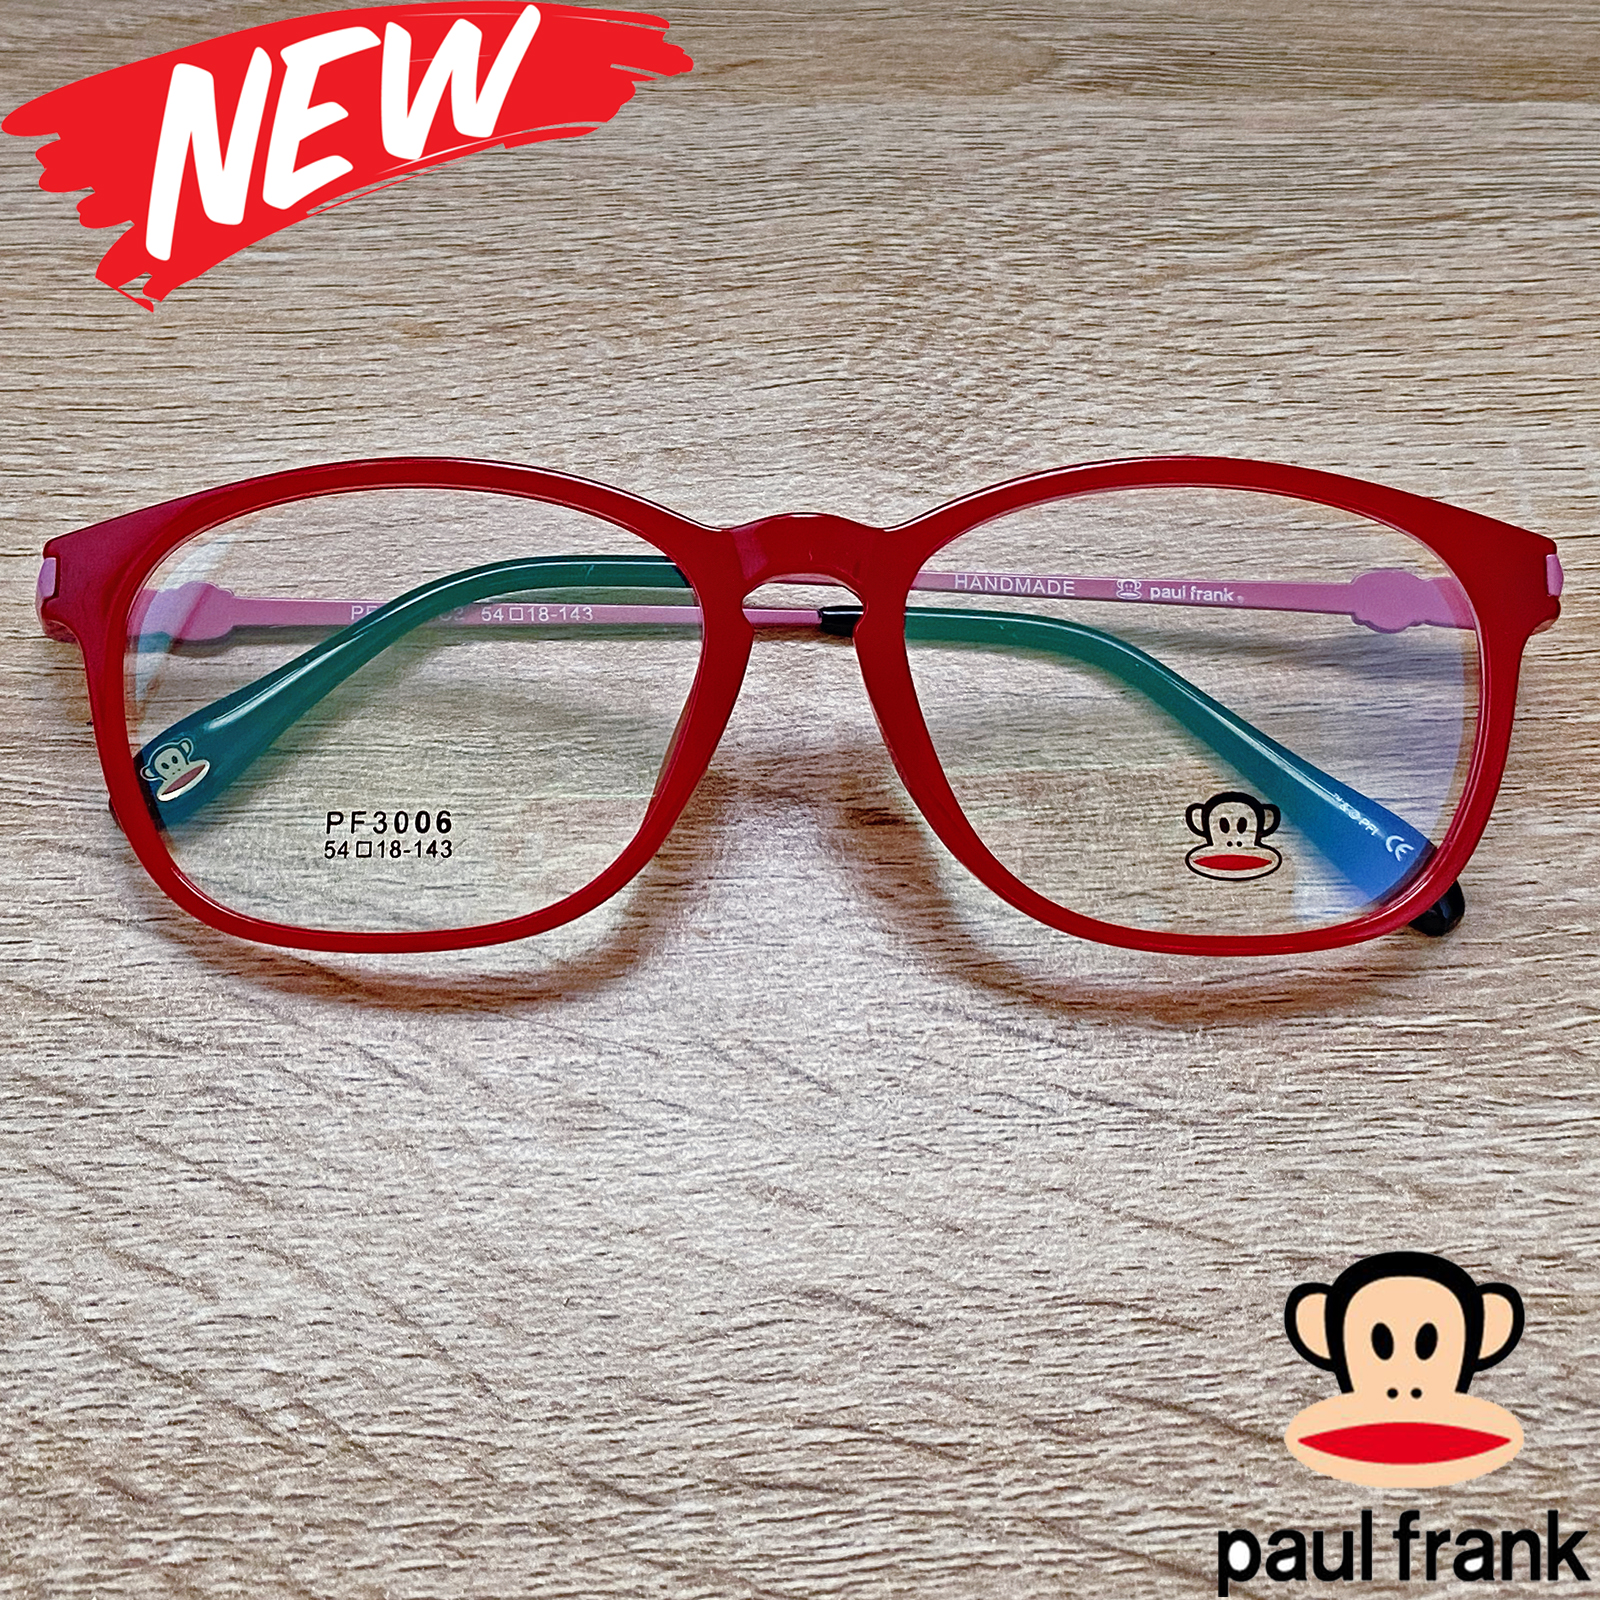 แว่นตาสำหรับตัดเลนส์ กรอบแว่นตา Fashion รุ่น Paul Frank 3006 สีแดง กรอบเต็ม ทรงรี ขาข้อต่อ TR90 รับตัดเลนส์ทุกชนิด ราคาถูก